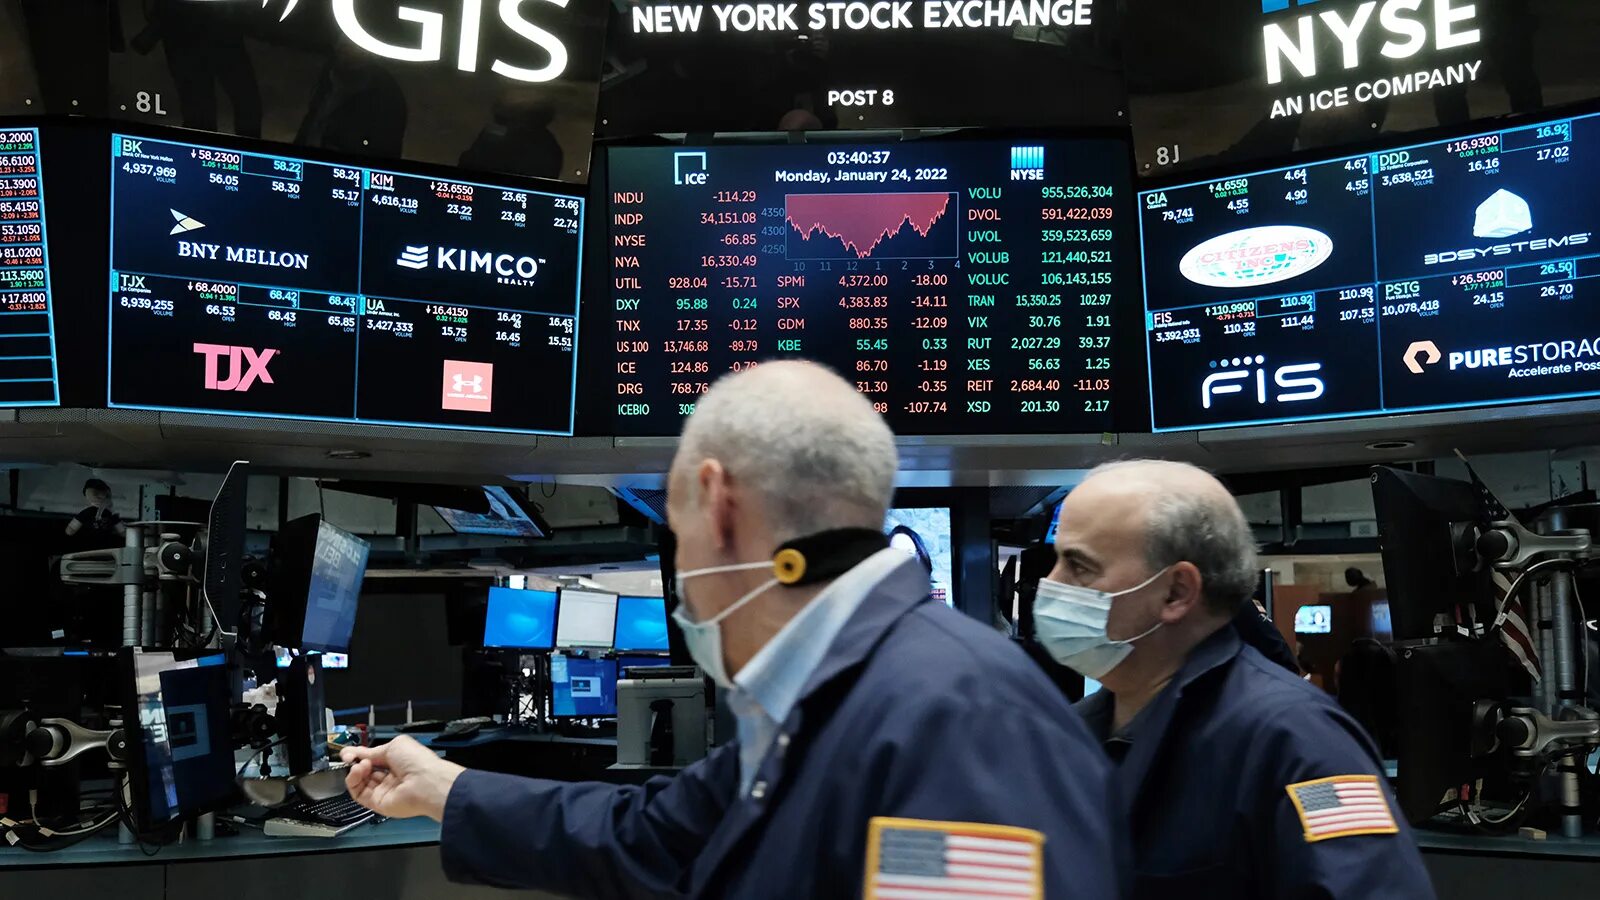 NYSE биржа. Рынок акций. Фондовый рынок сейчас. Обвал рынка акций. Почему упал рынок